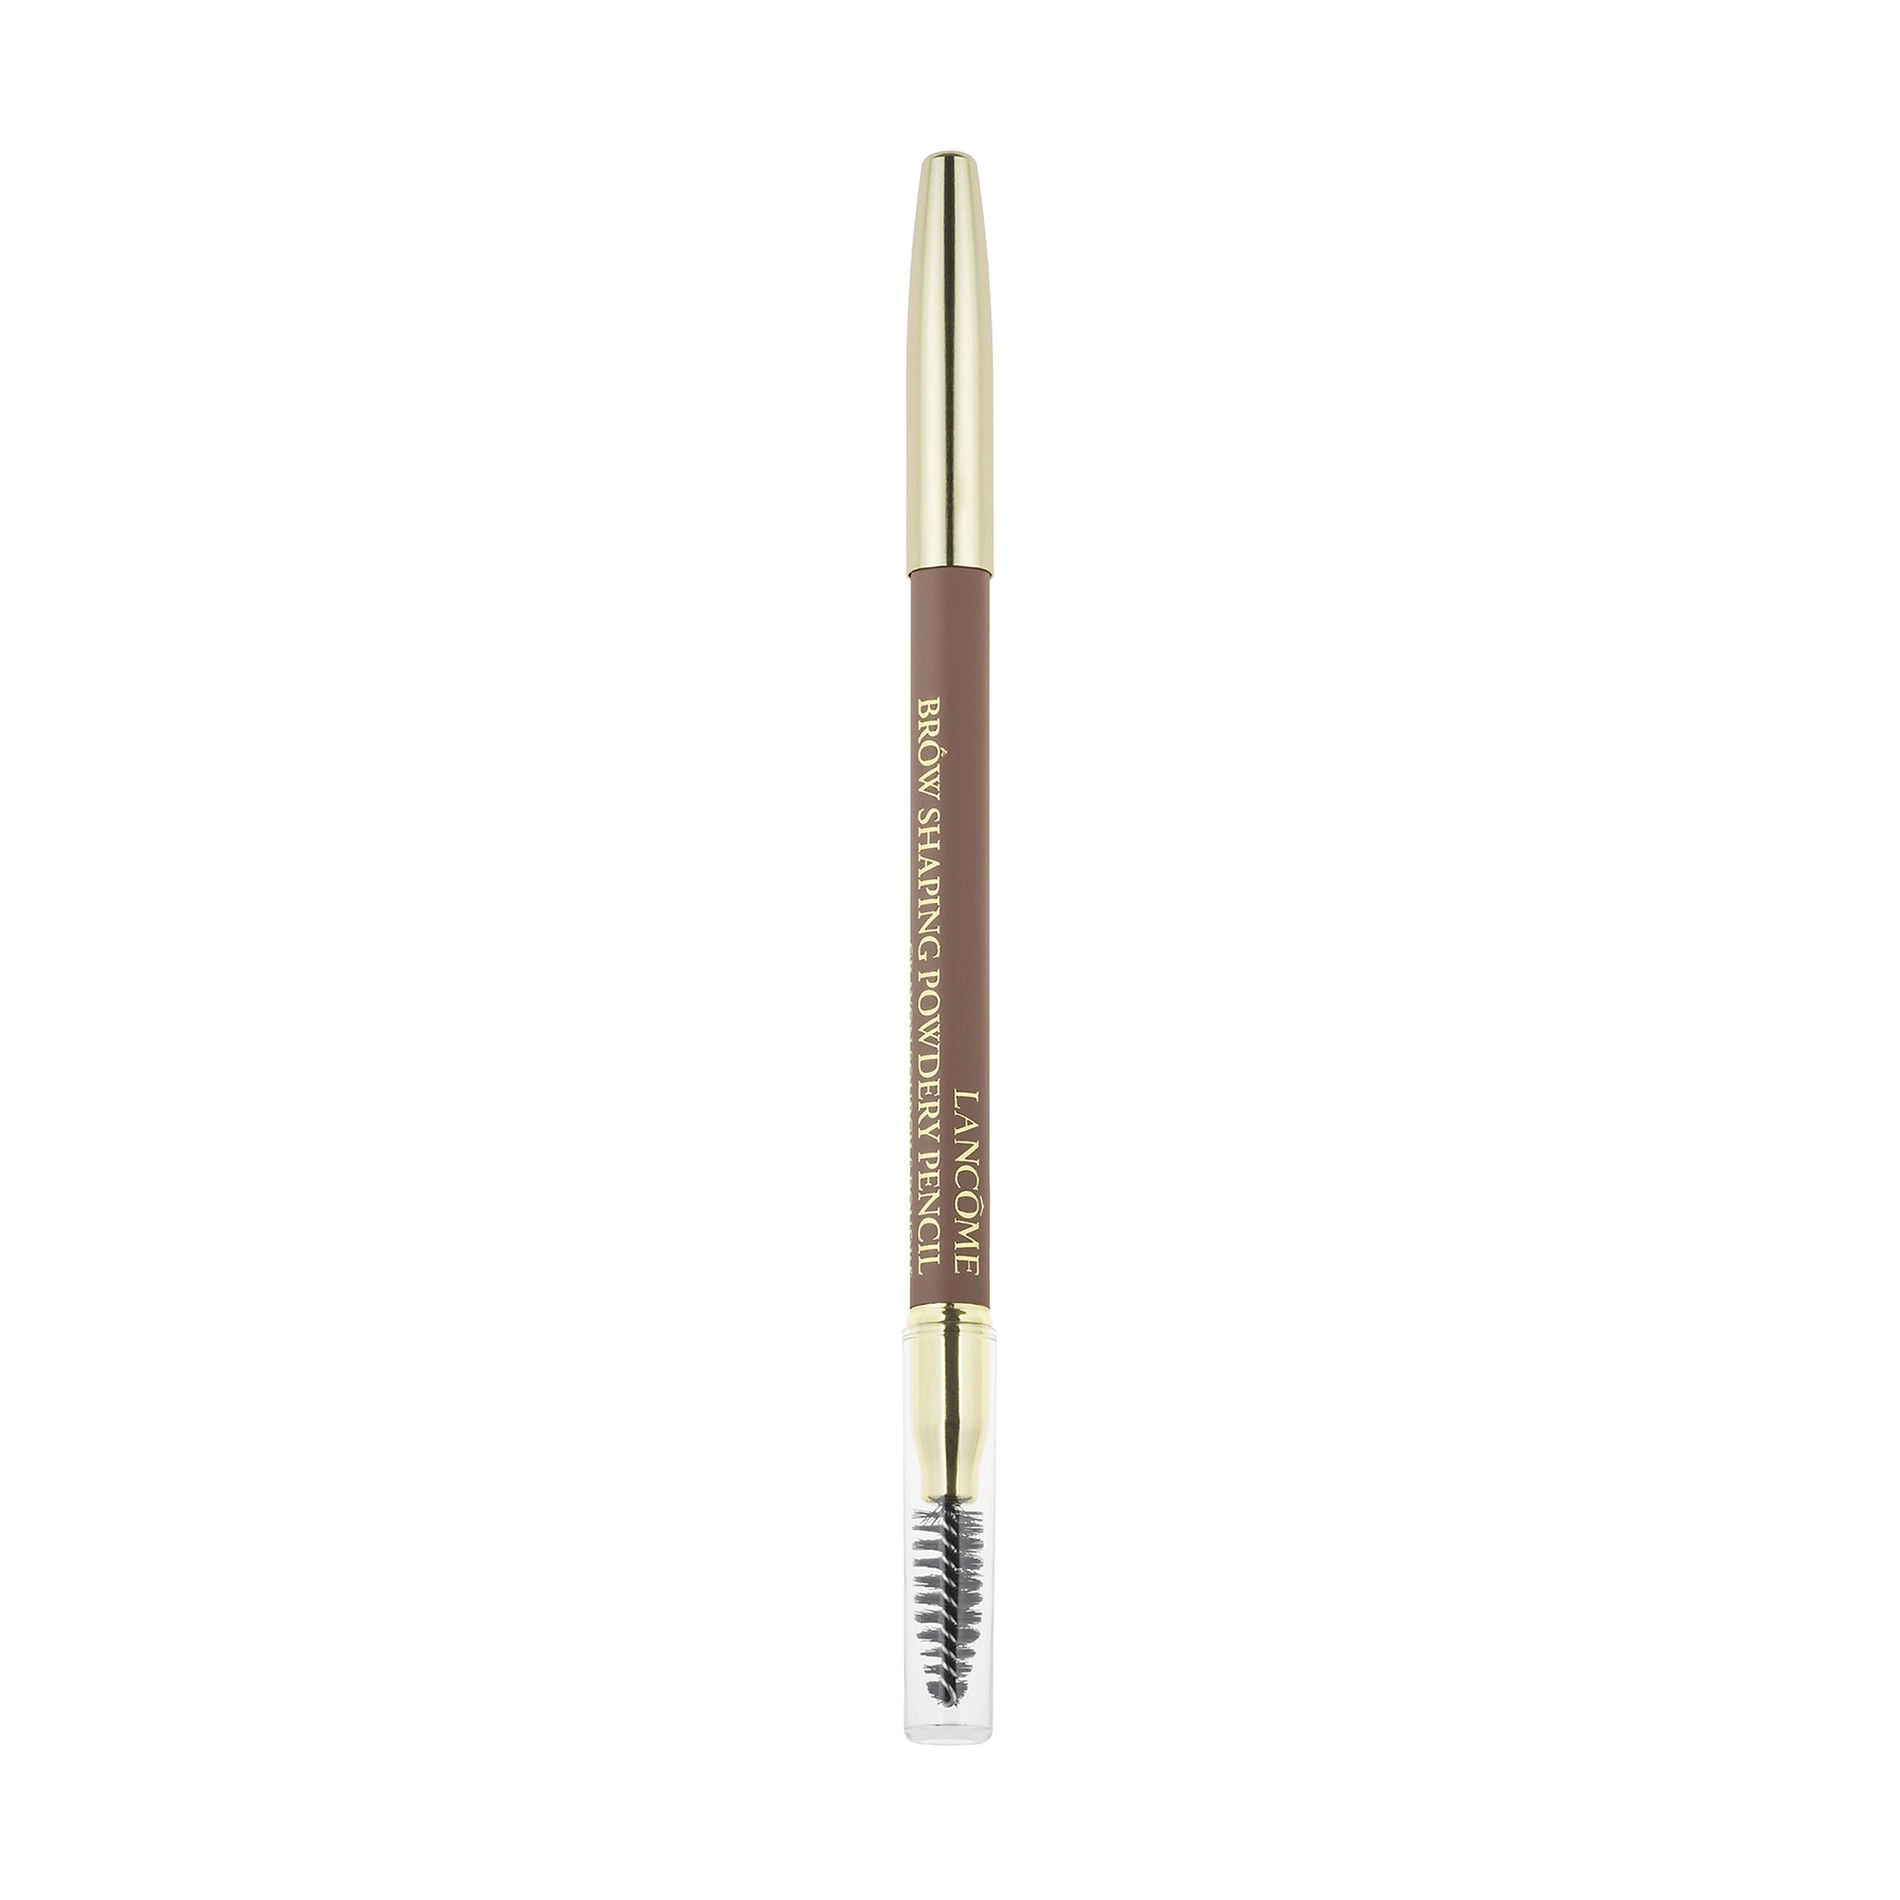 Lancome Олівець для брів Brow Shaping Powdery Pencil, 1.19 г - фото N1